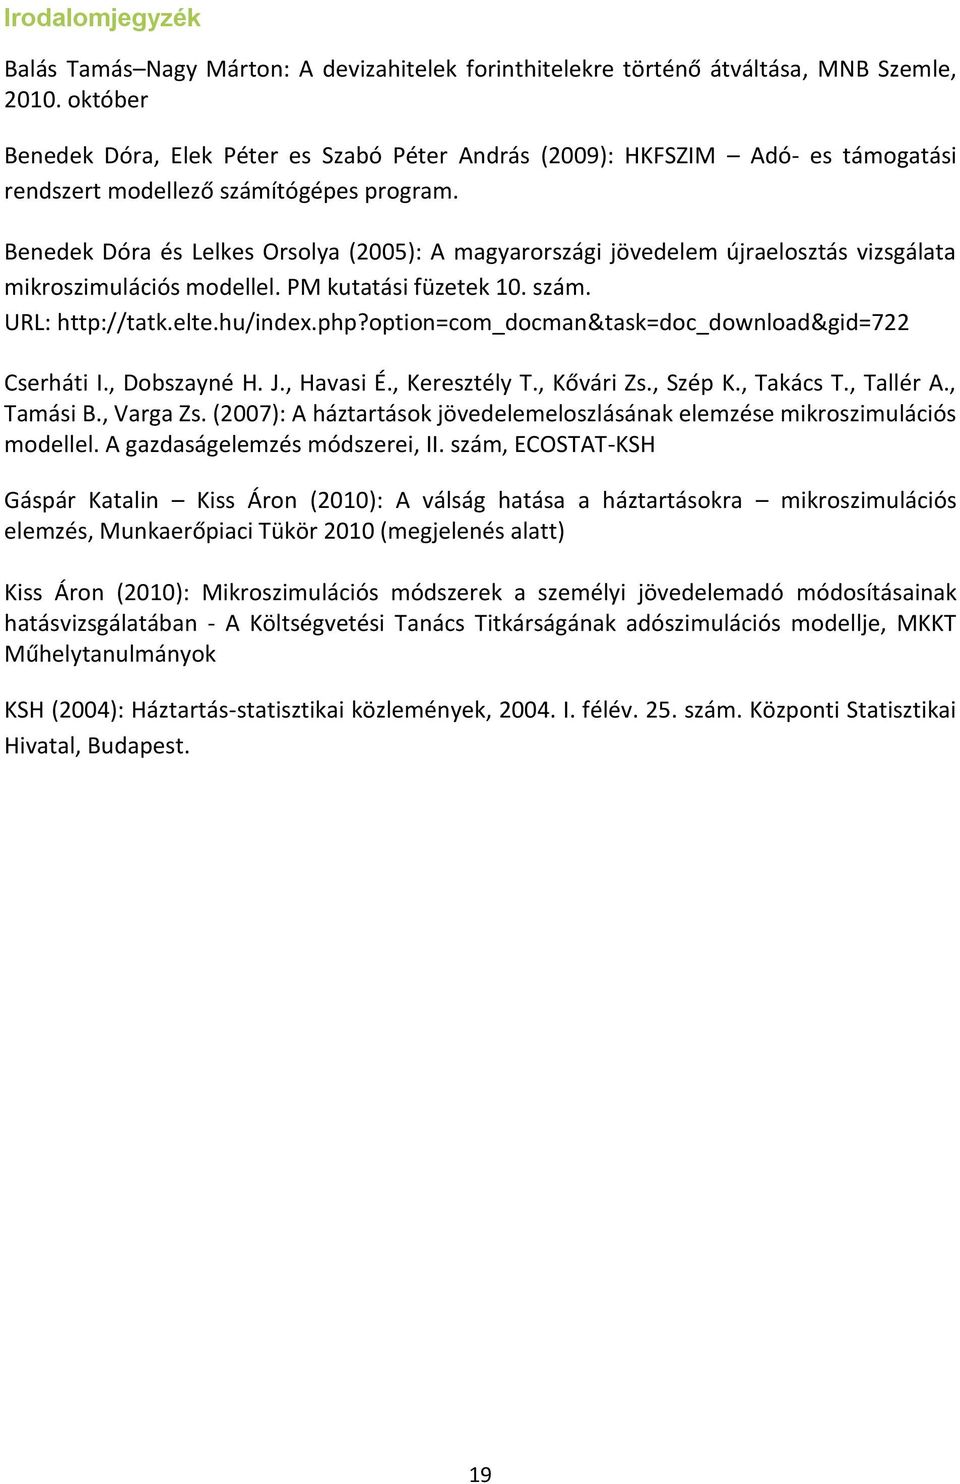 Benedek Dóra és Lelkes Orsolya (2005): A magyarországi jövedelem újraelosztás vizsgálata mikroszimulációs modellel. PM kutatási füzetek 10. szám. URL: http://tatk.elte.hu/index.php?